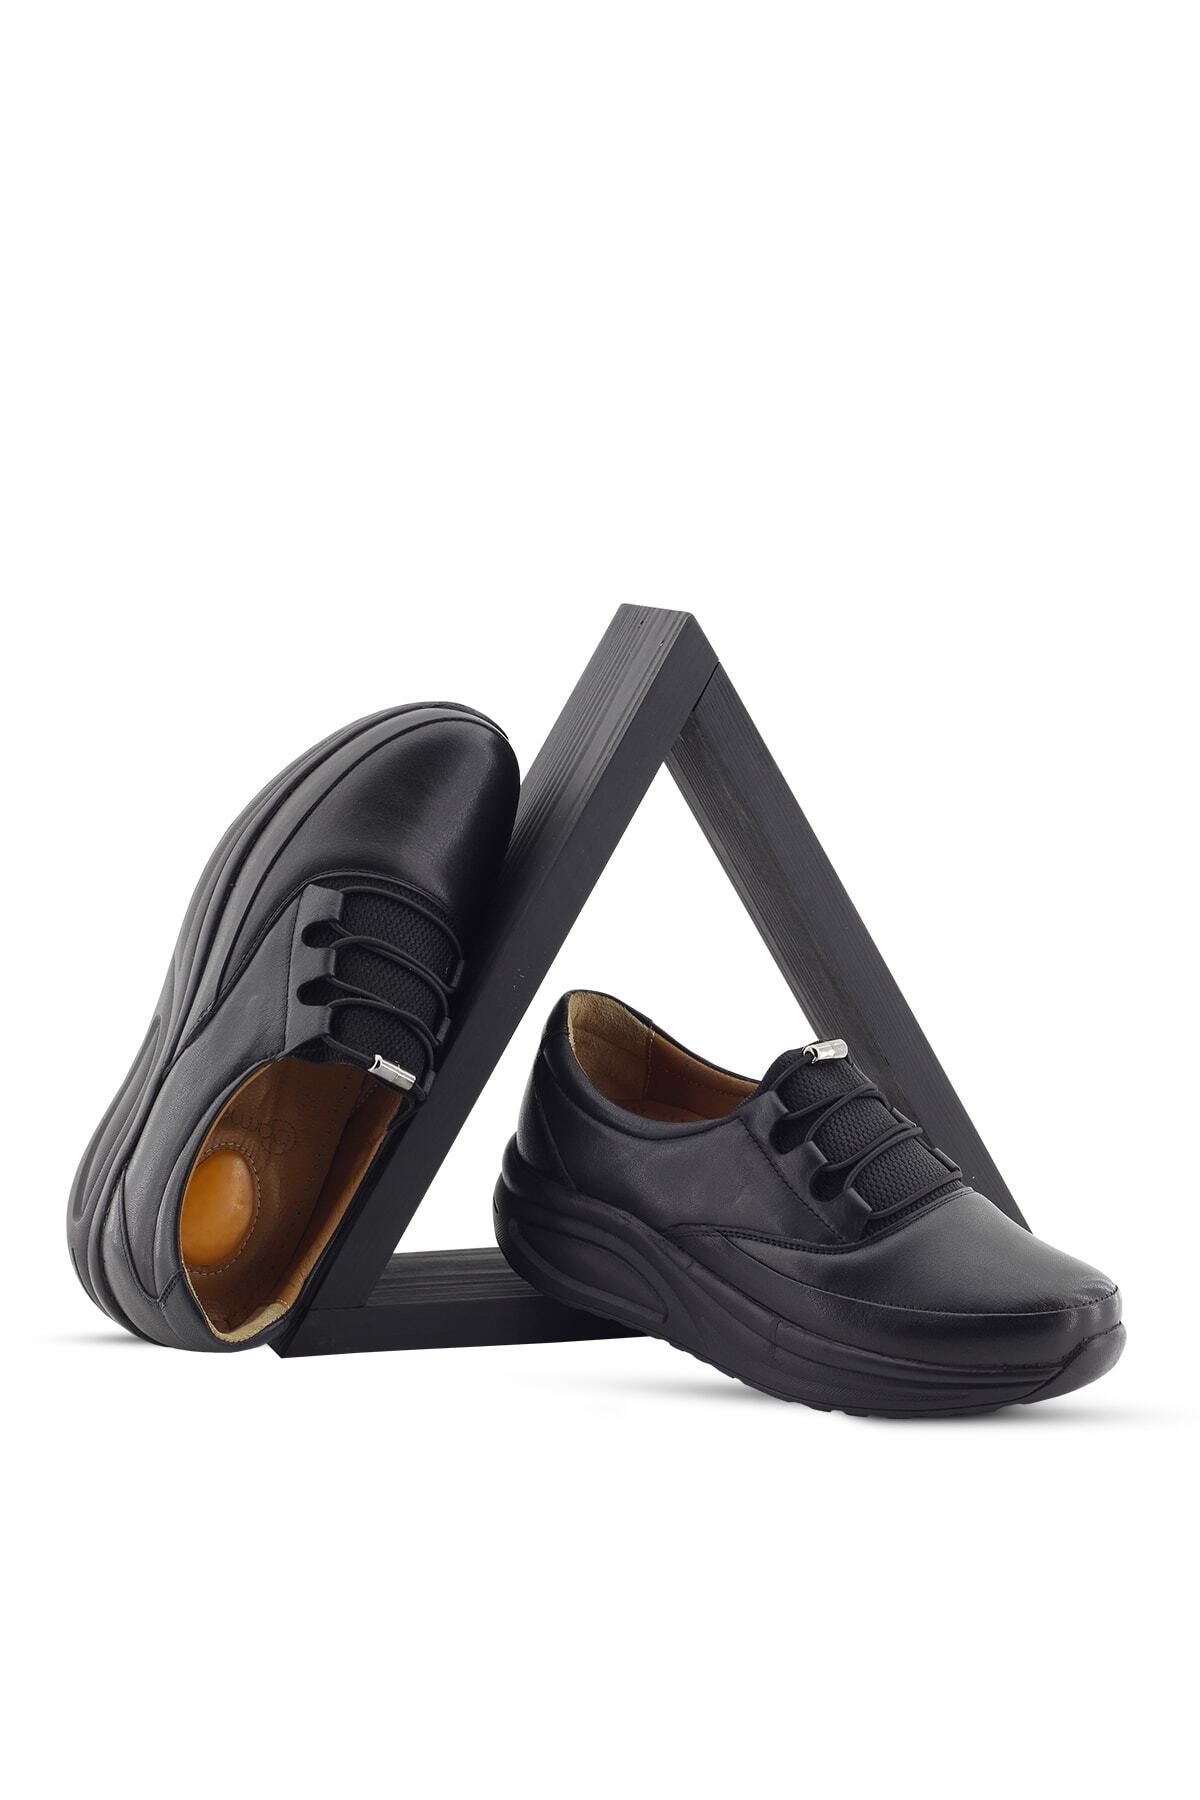 Barmea 855 Kadın Siyah Ortopedik Topuk Dikeni Hafif Yürüyüş Ayakkabısı